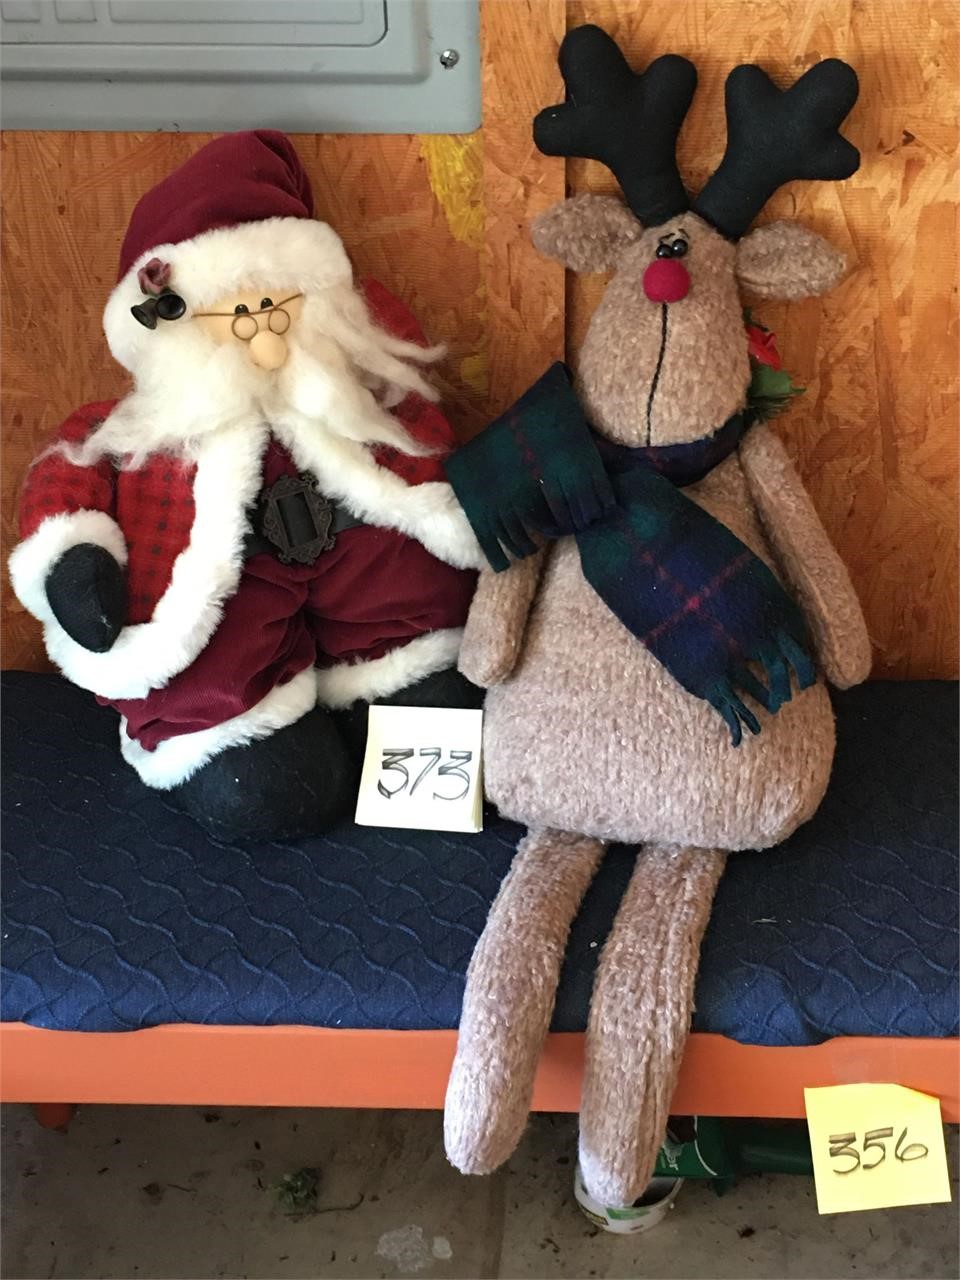 Santa & Reindeer